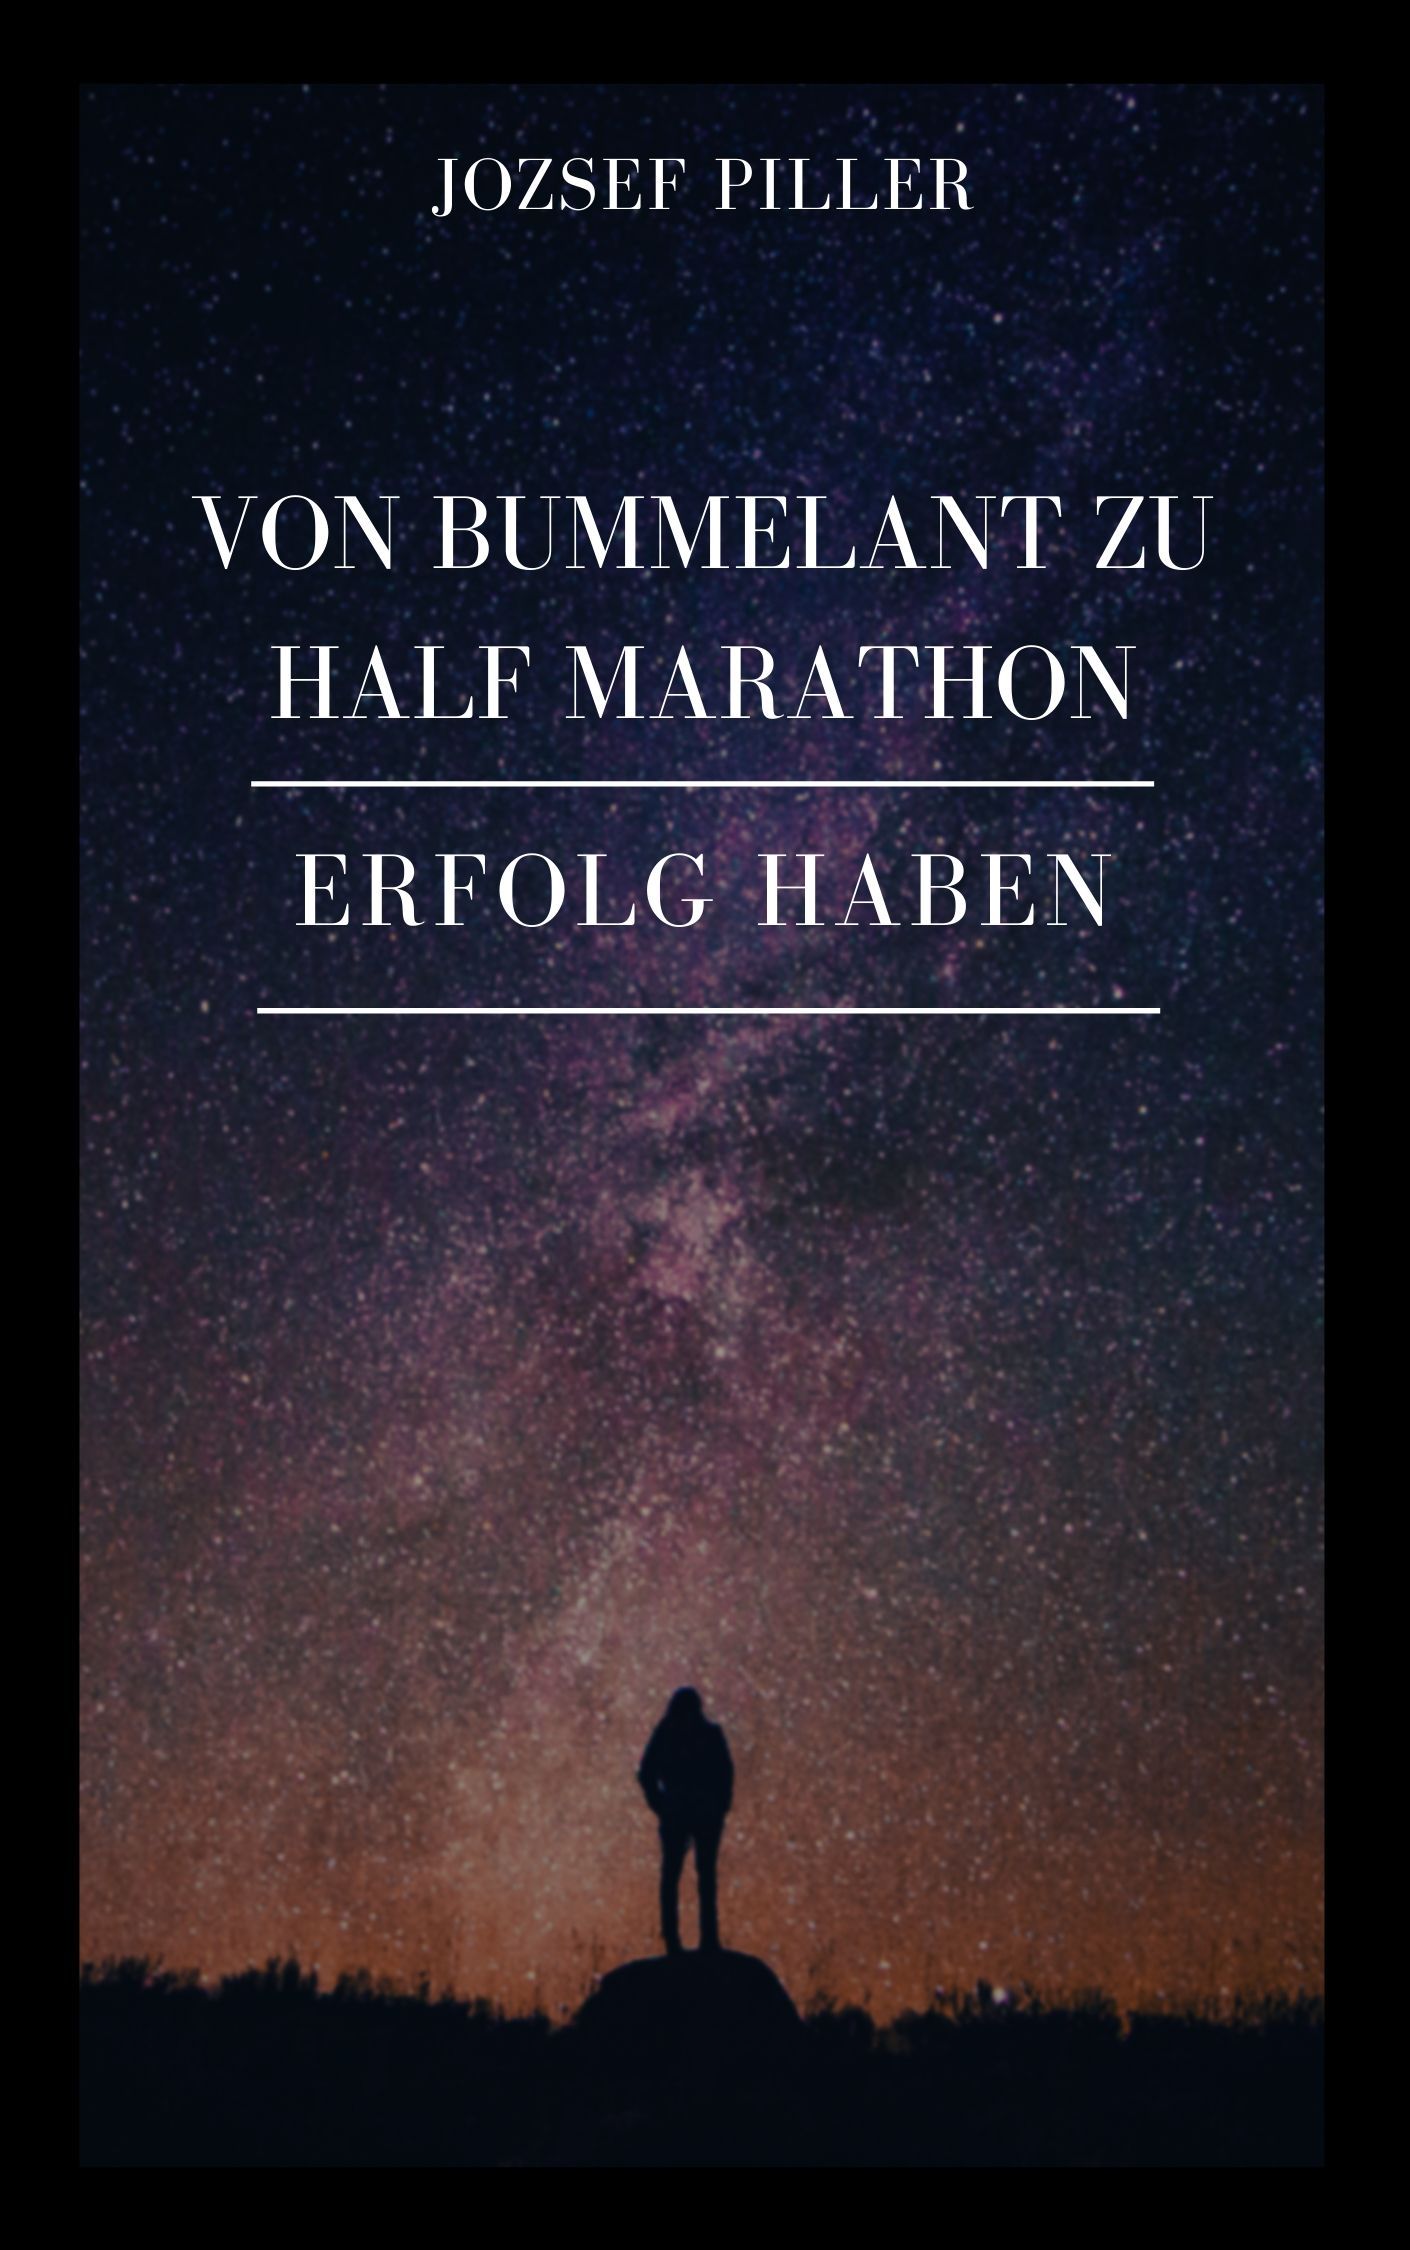 Von Bummelant zu Half Marathon - Wie gelingt es Ihnen?, eBook by Jozsef Piller